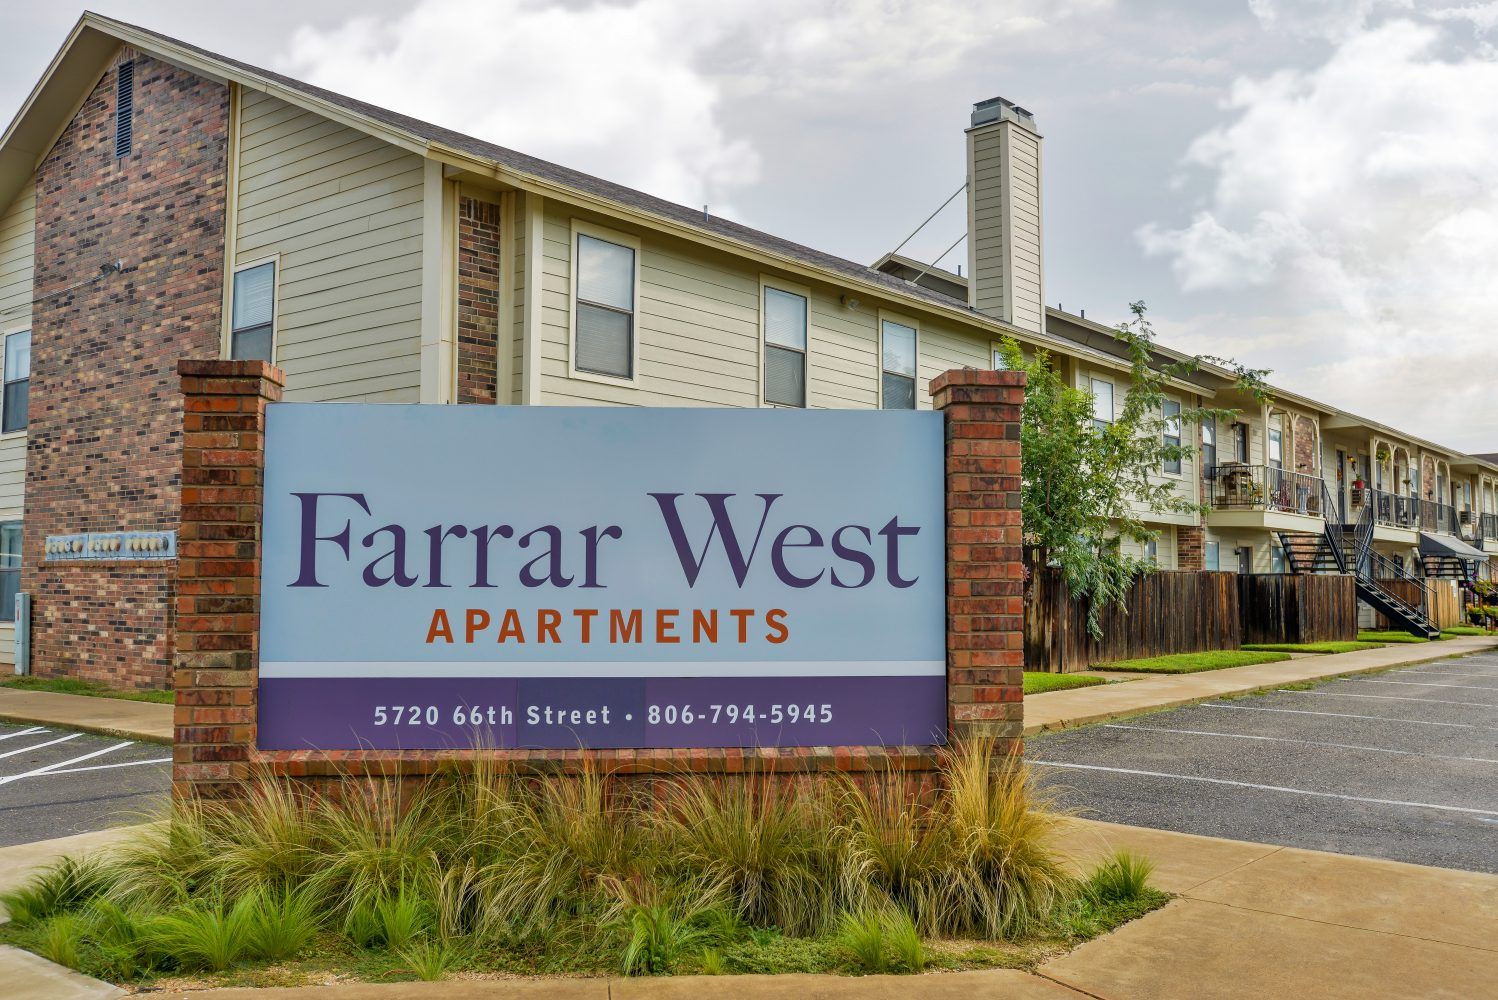 Farrar West Apartments Sign